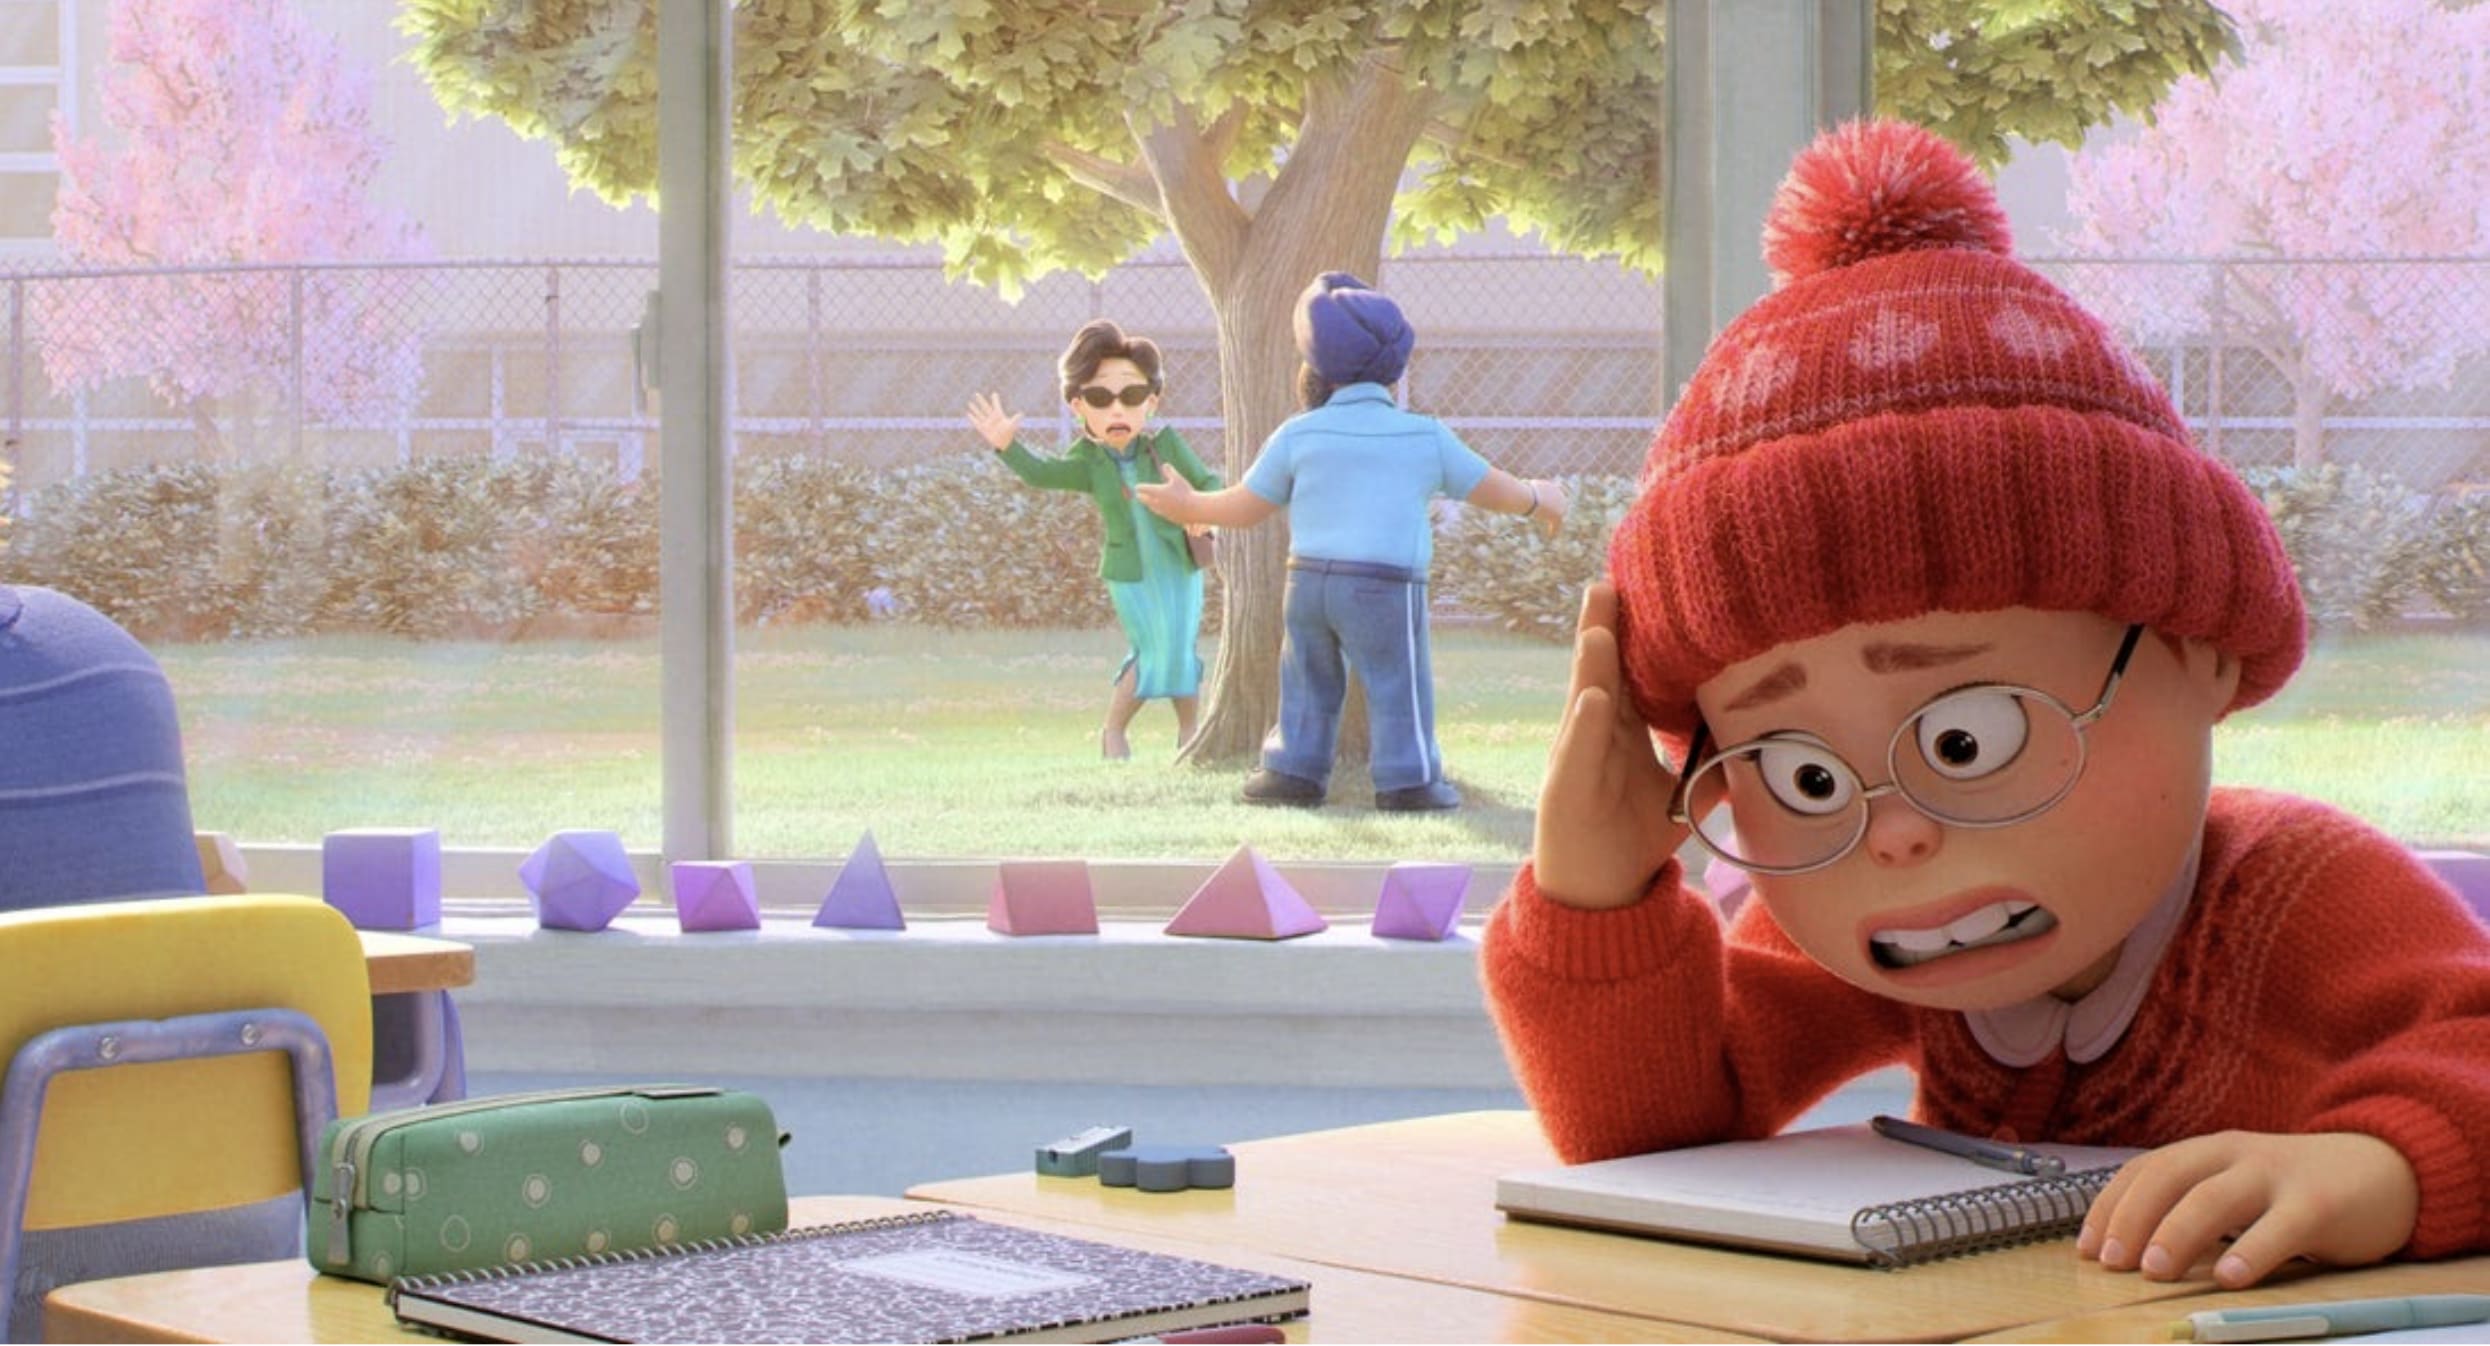 Mei giấu mặt trong sự xấu hổ khi bị mẹ bắt gặp theo dõi cô ở trường trong bộ phim Turning Red của Disney và Pixar